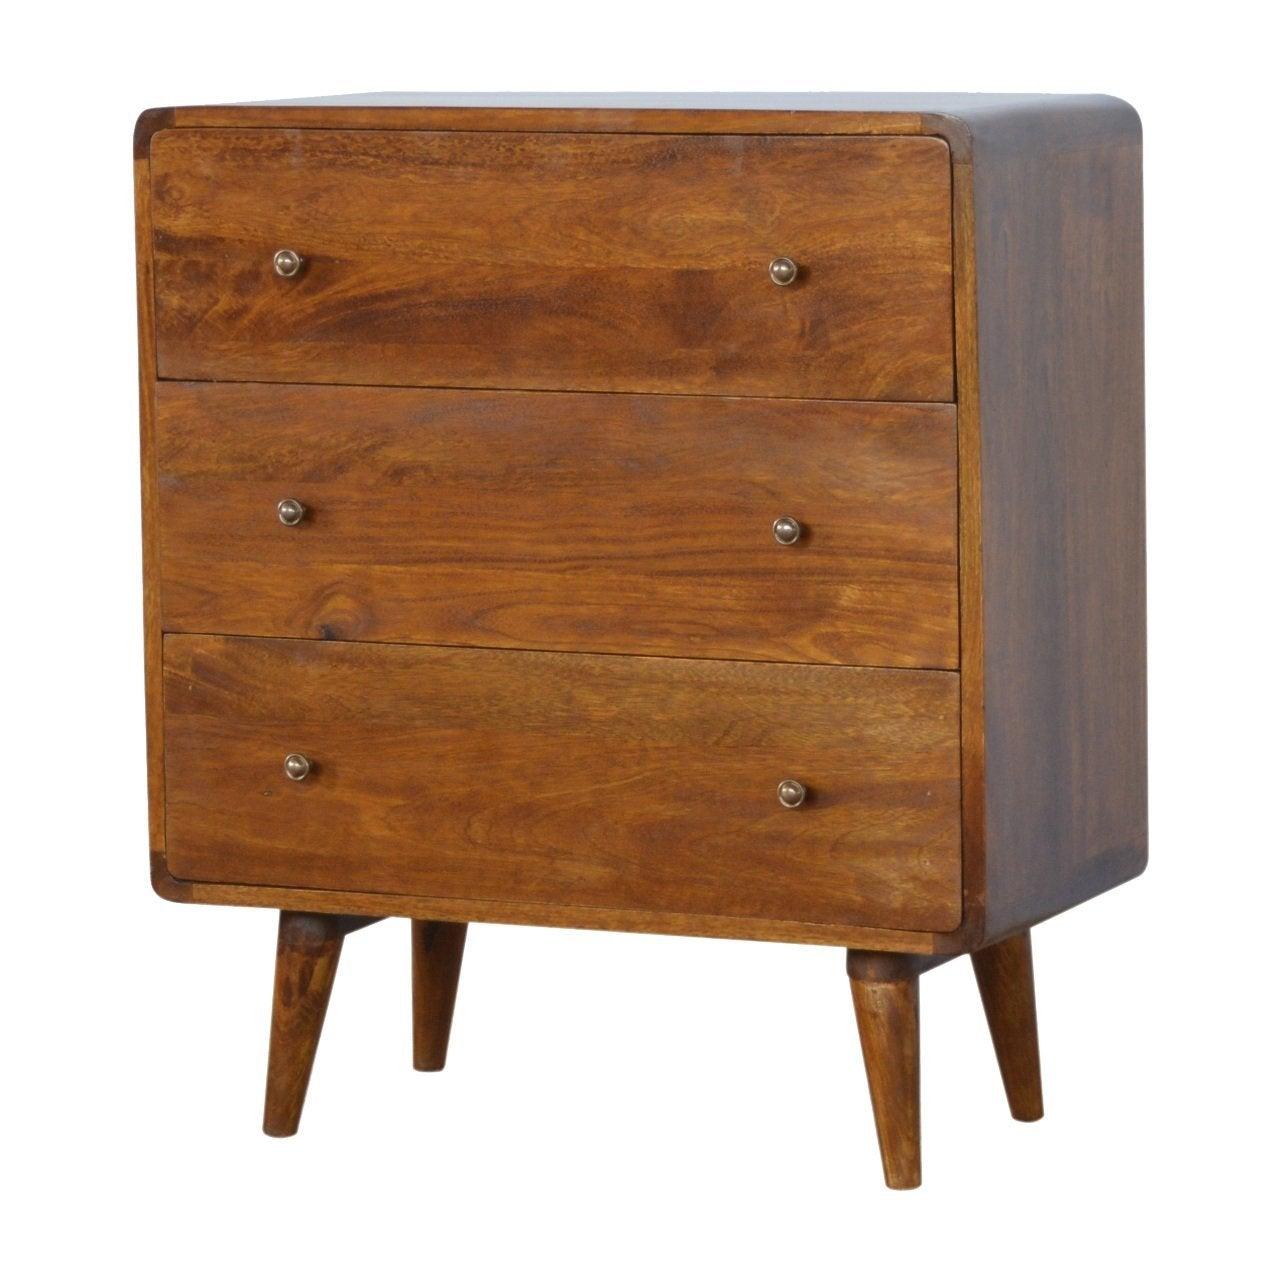 Curved chestnut chest - crimblefest furniture - image 2